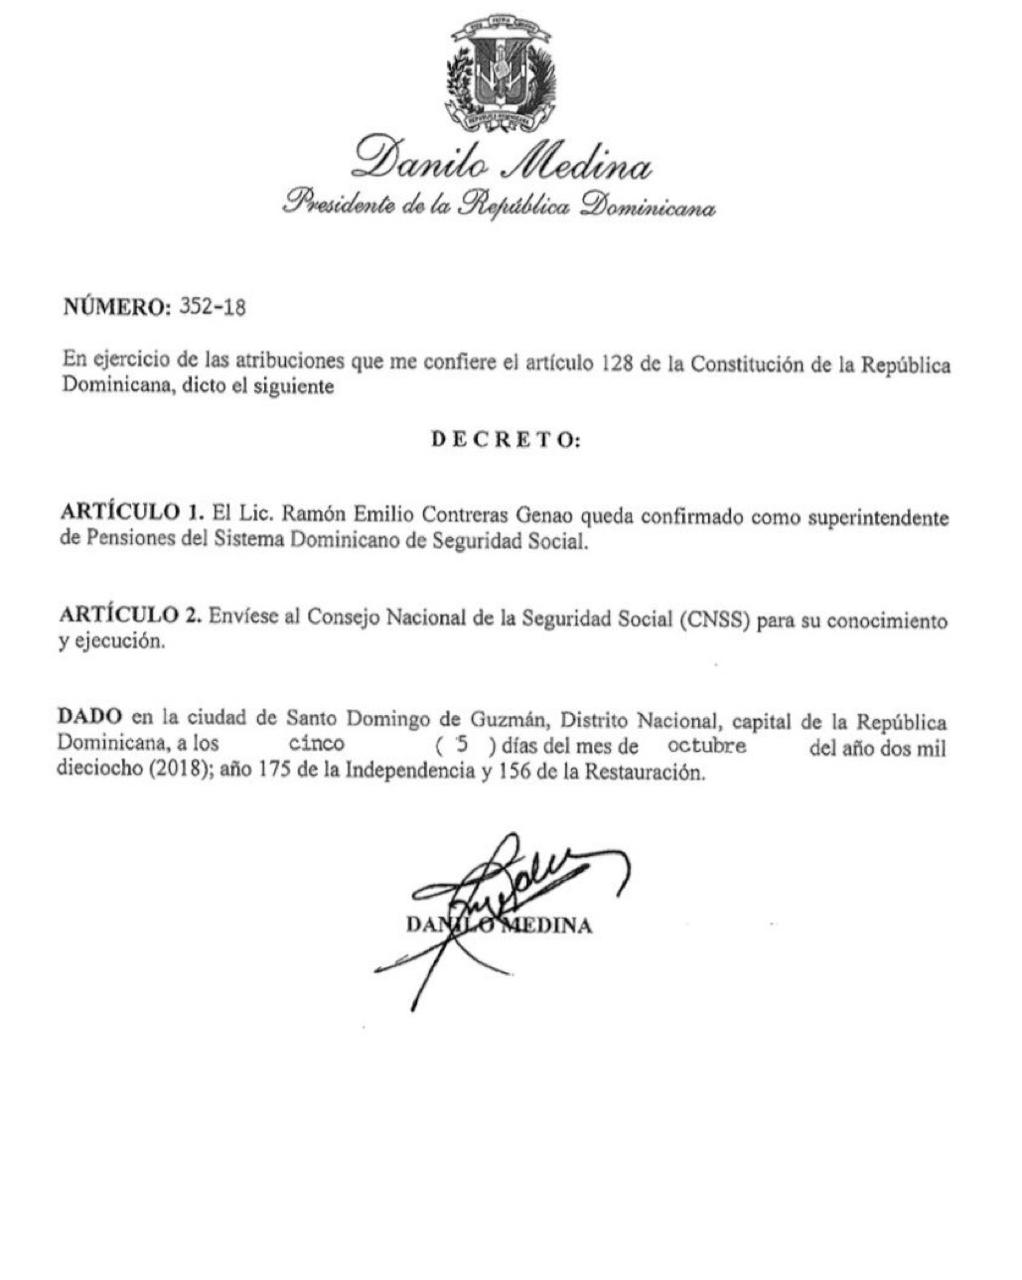 Decreto confirma a Ramón Emilio Contreras Genao, superintendente de Pensiones del Sistema Dominicano de Seguridad Social.